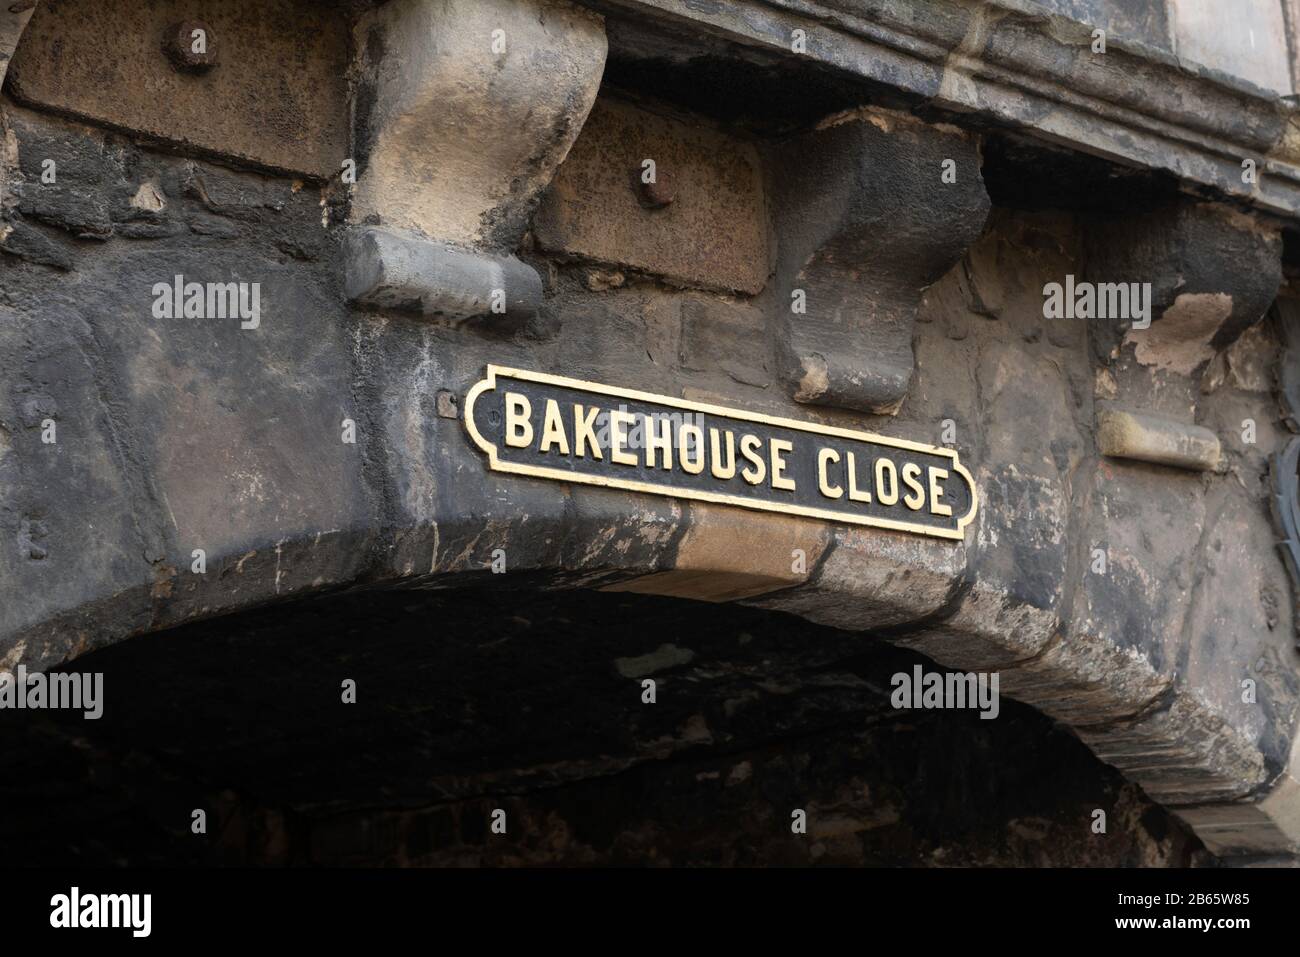 Bakehouse Close à Édimbourg, l'une des ruelles historiques de la ville utilisée comme emplacement pour la série télévisée Outlander Banque D'Images